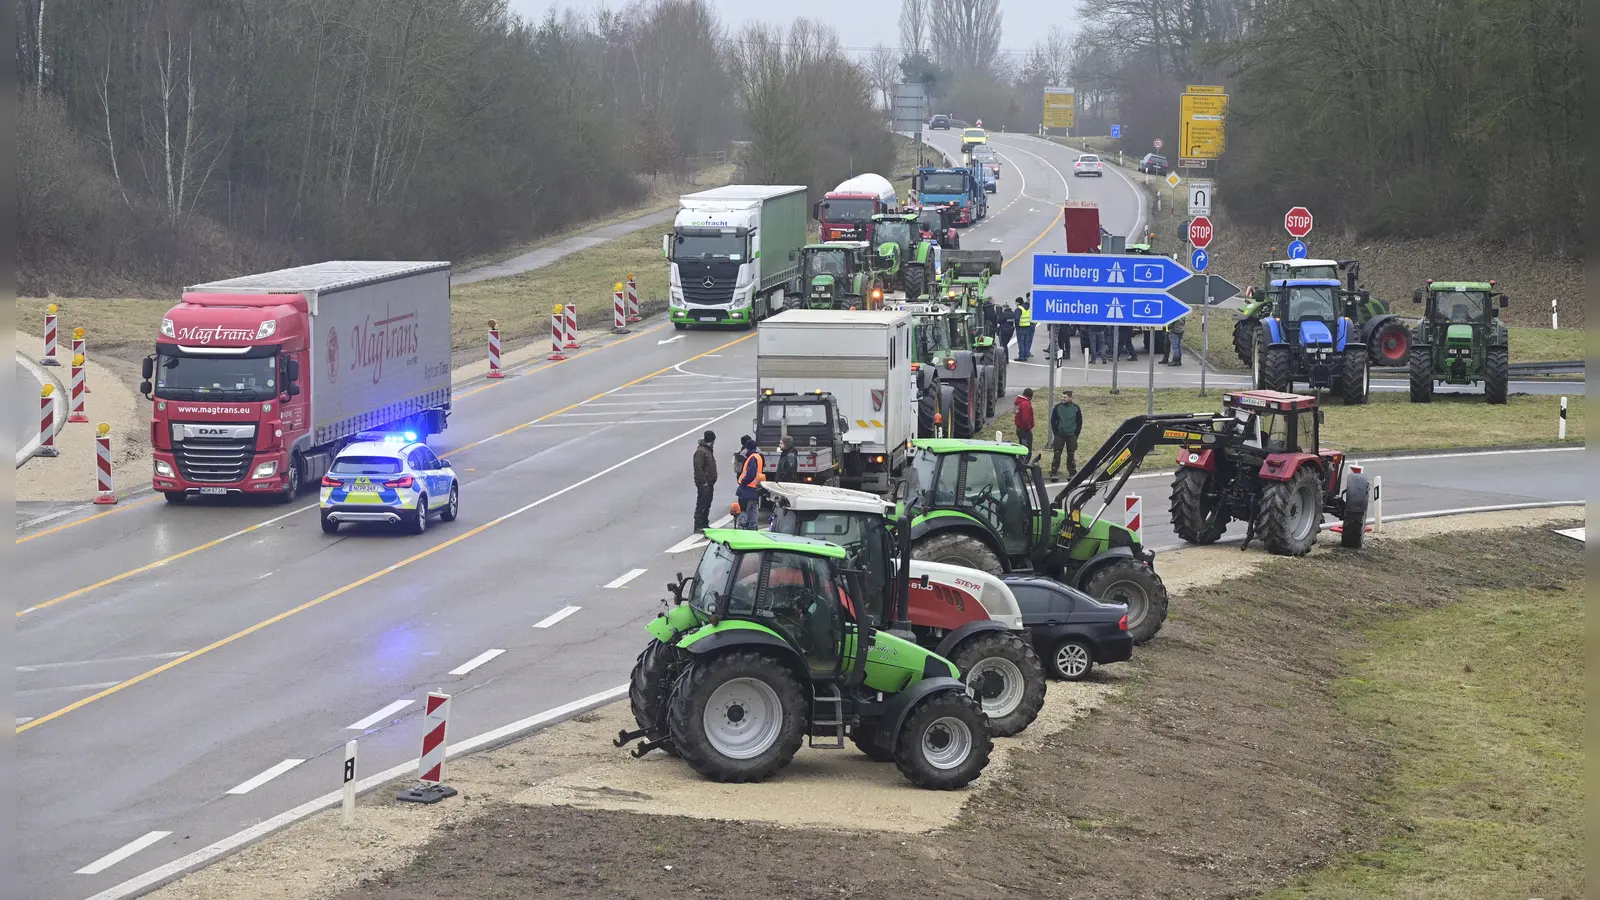 Traktoren auf dem Seitenstreifen und auf der Fahrbahn, dazu Blaulicht: Während der Proteste der Landwirte brauchen Lkw- und Autofahrer Geduld. (Foto: Jim Albright)